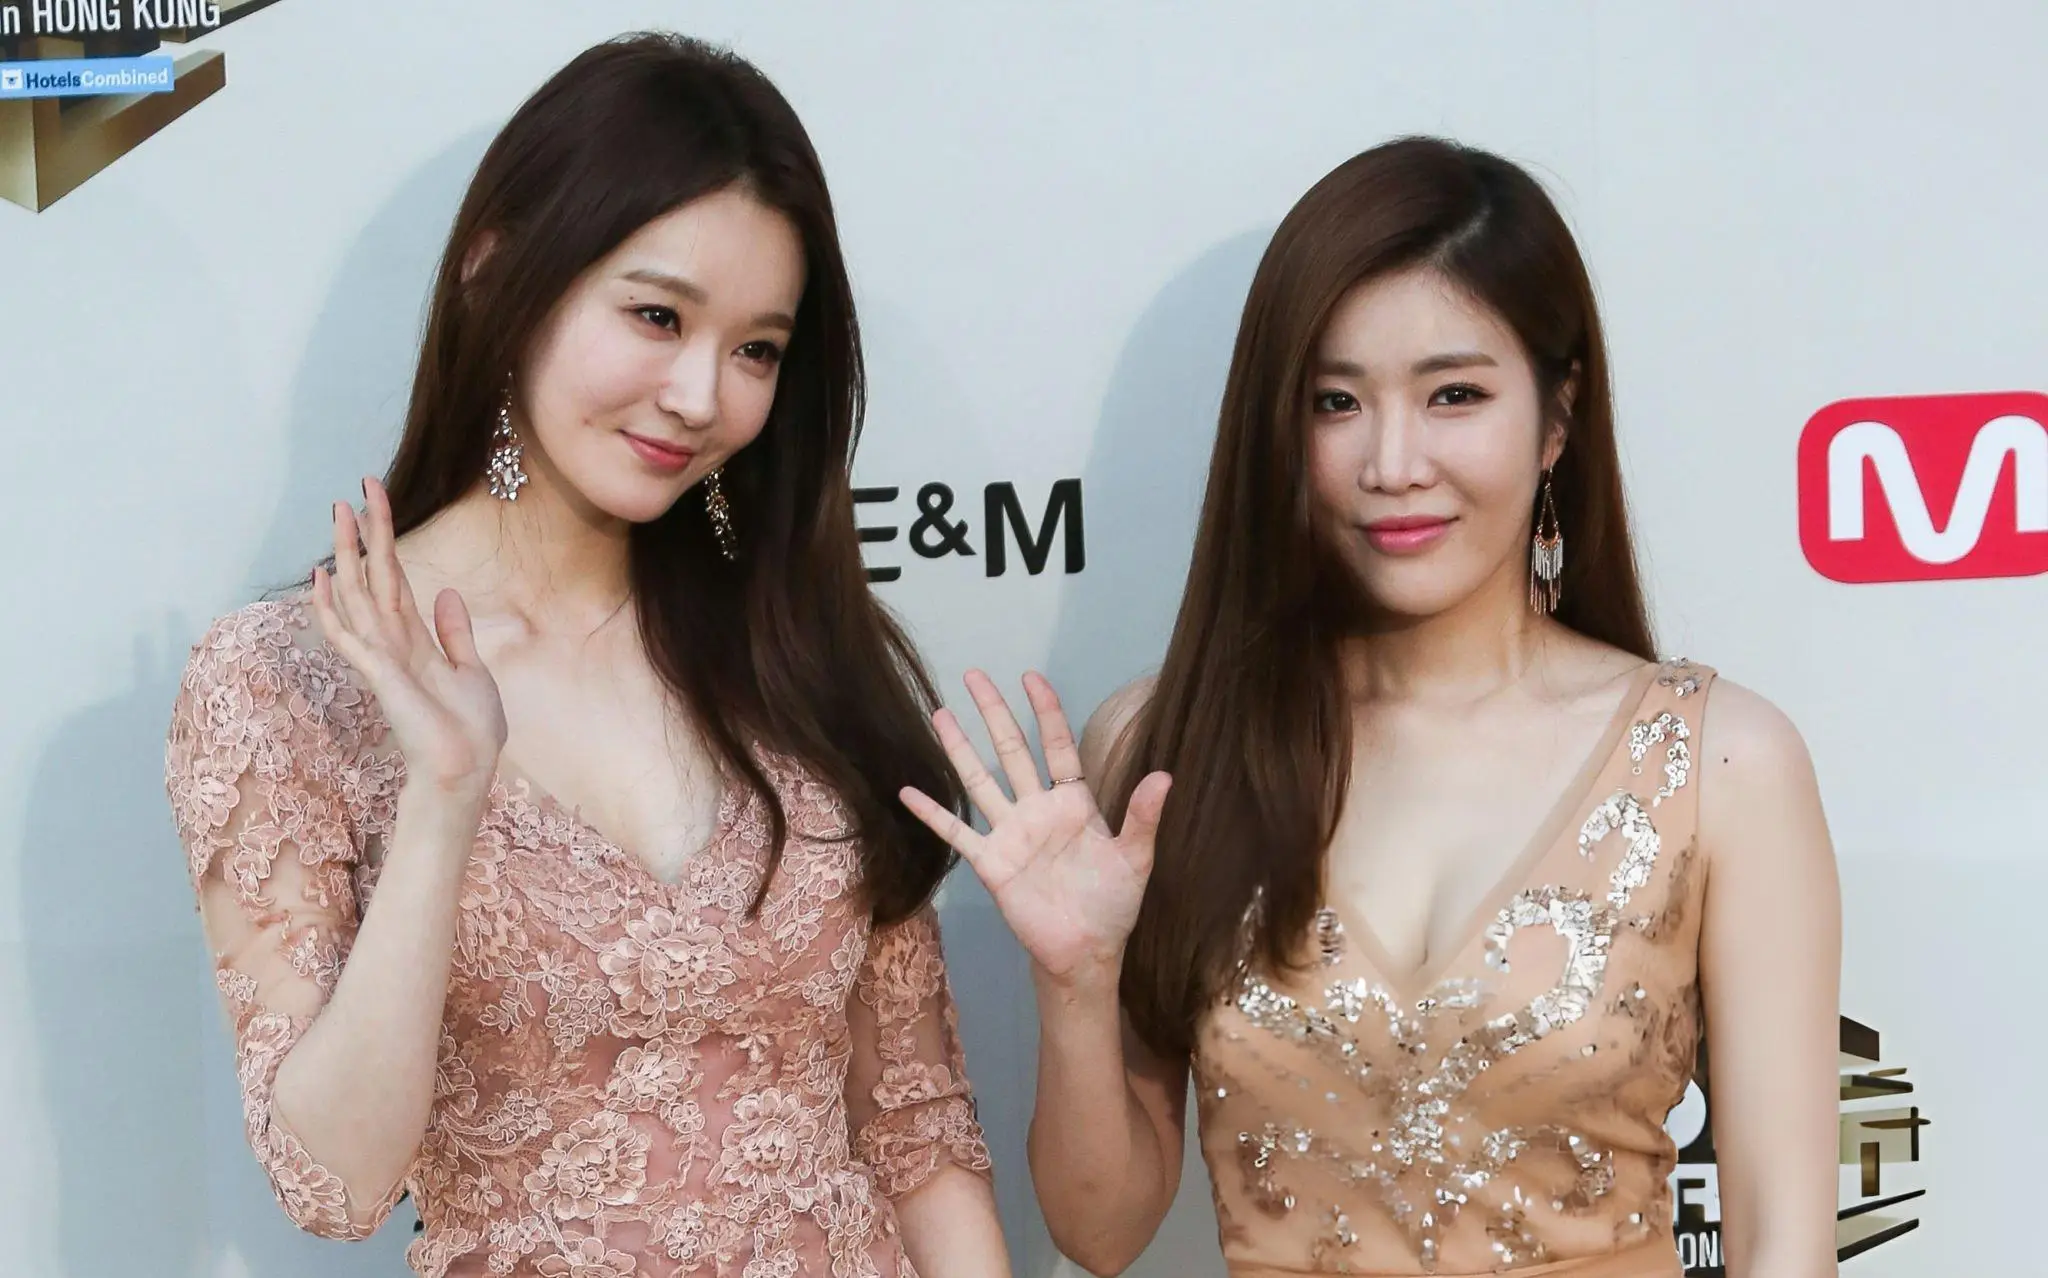 Kang Min-kyung and Lee Hae-ri of Davichi